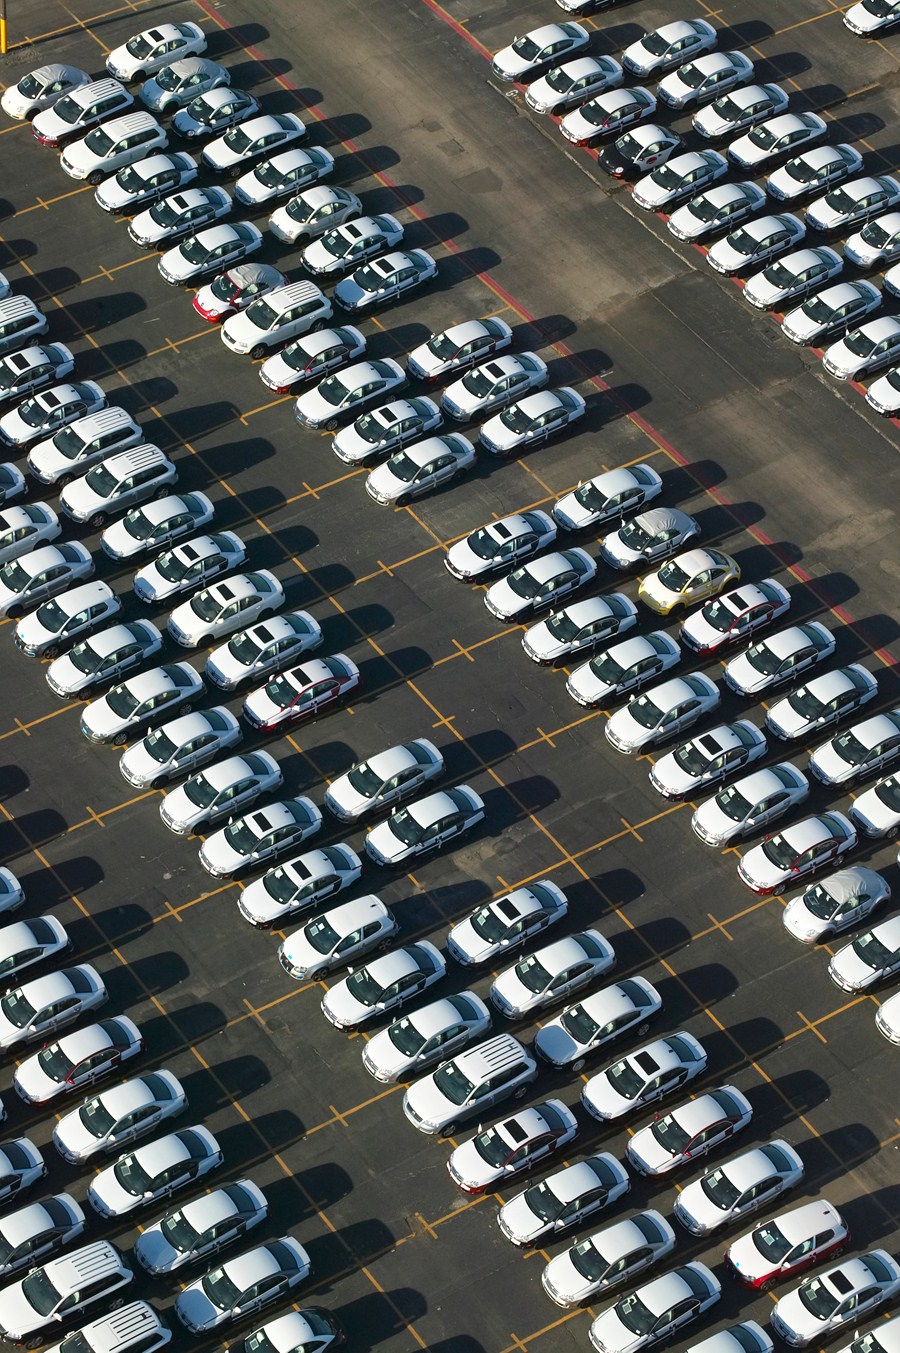 Pátio de carros em montadora nos EUA: setor reduziu produção por conta de greves (Shutterstock)